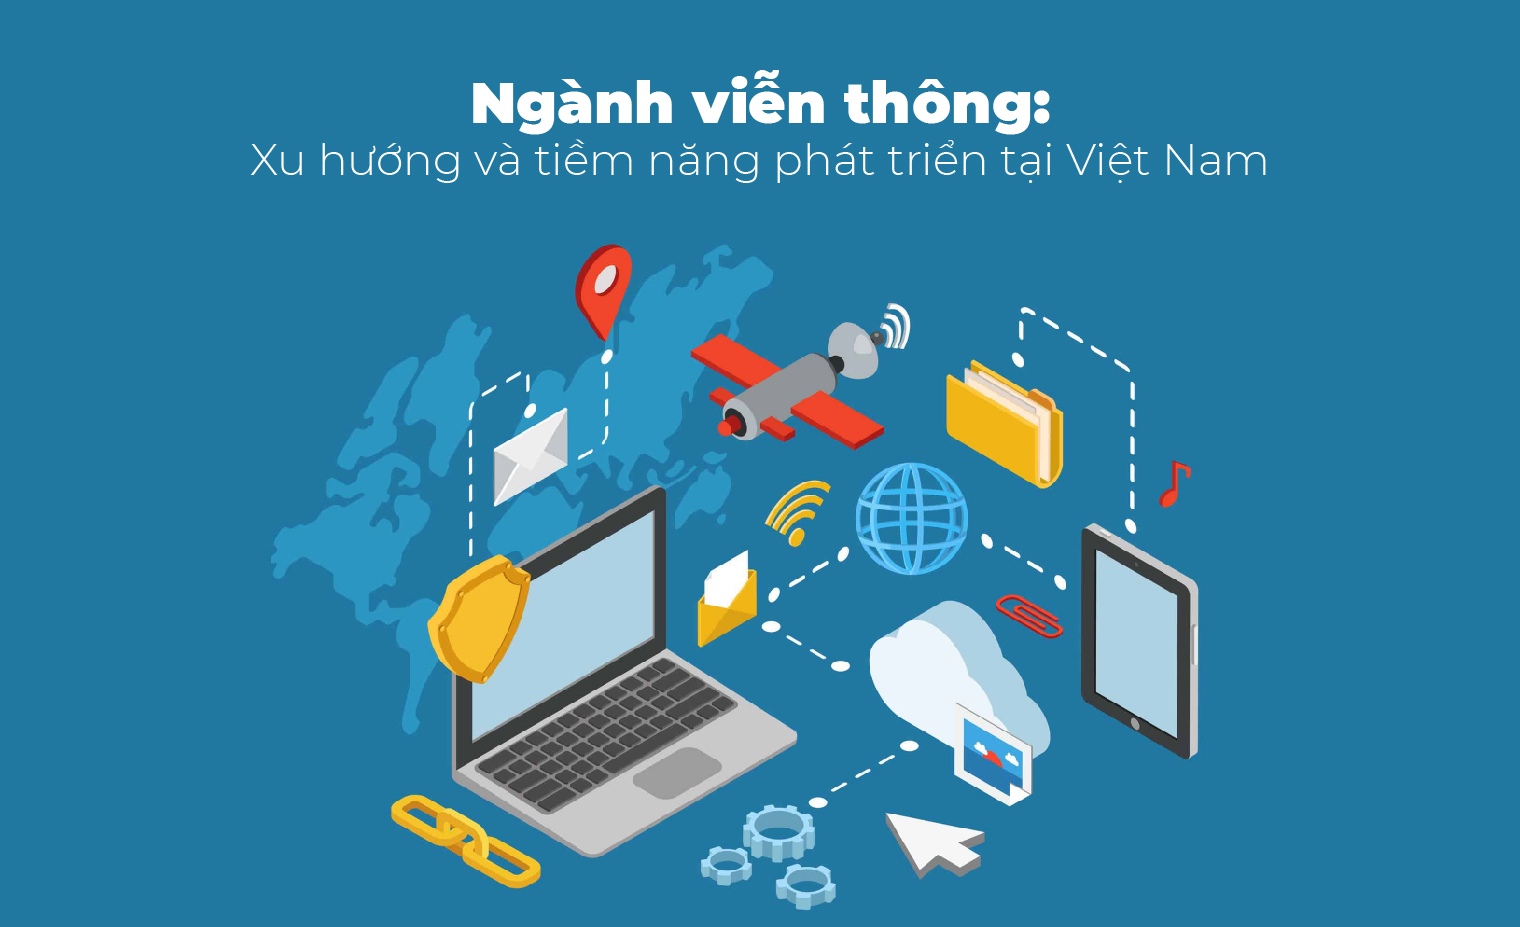 Ngành viễn thông Việt Nam: Xu hướng và tiềm năng phát triển